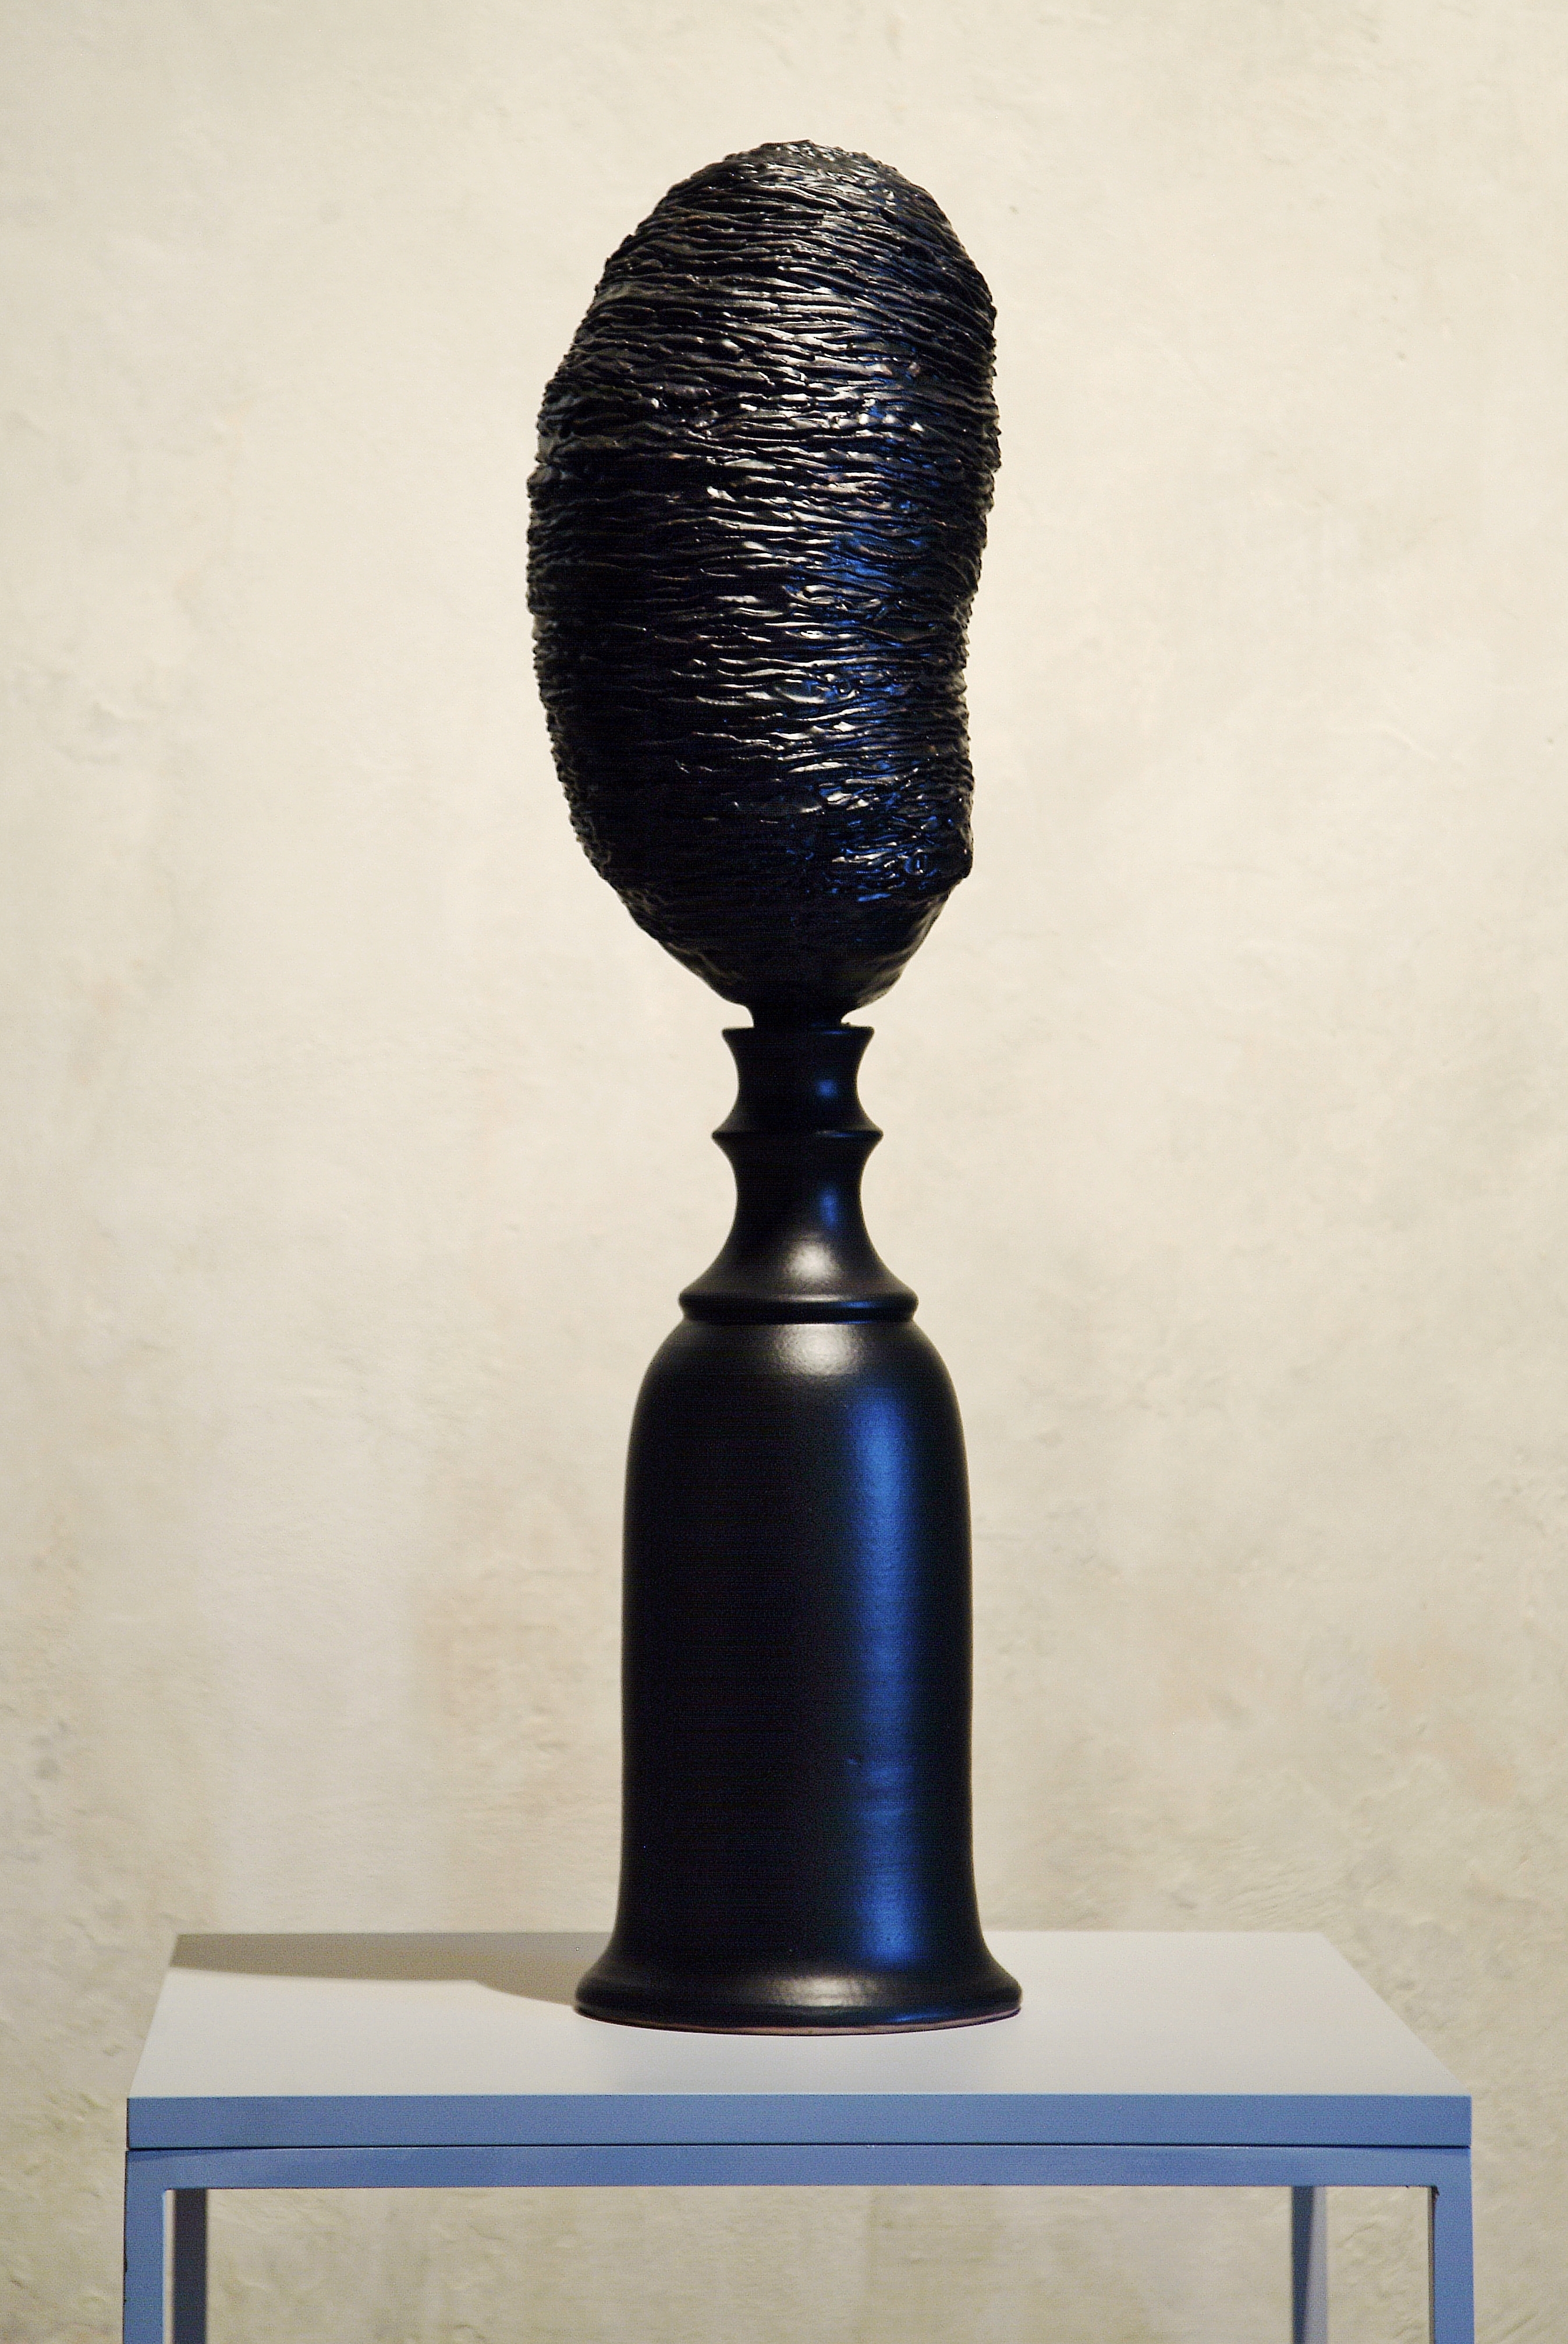 Chiara-Lecca-Black-Belly-3-2015-ceramica-Courtesy-Galleria-Fumagalli-Milano